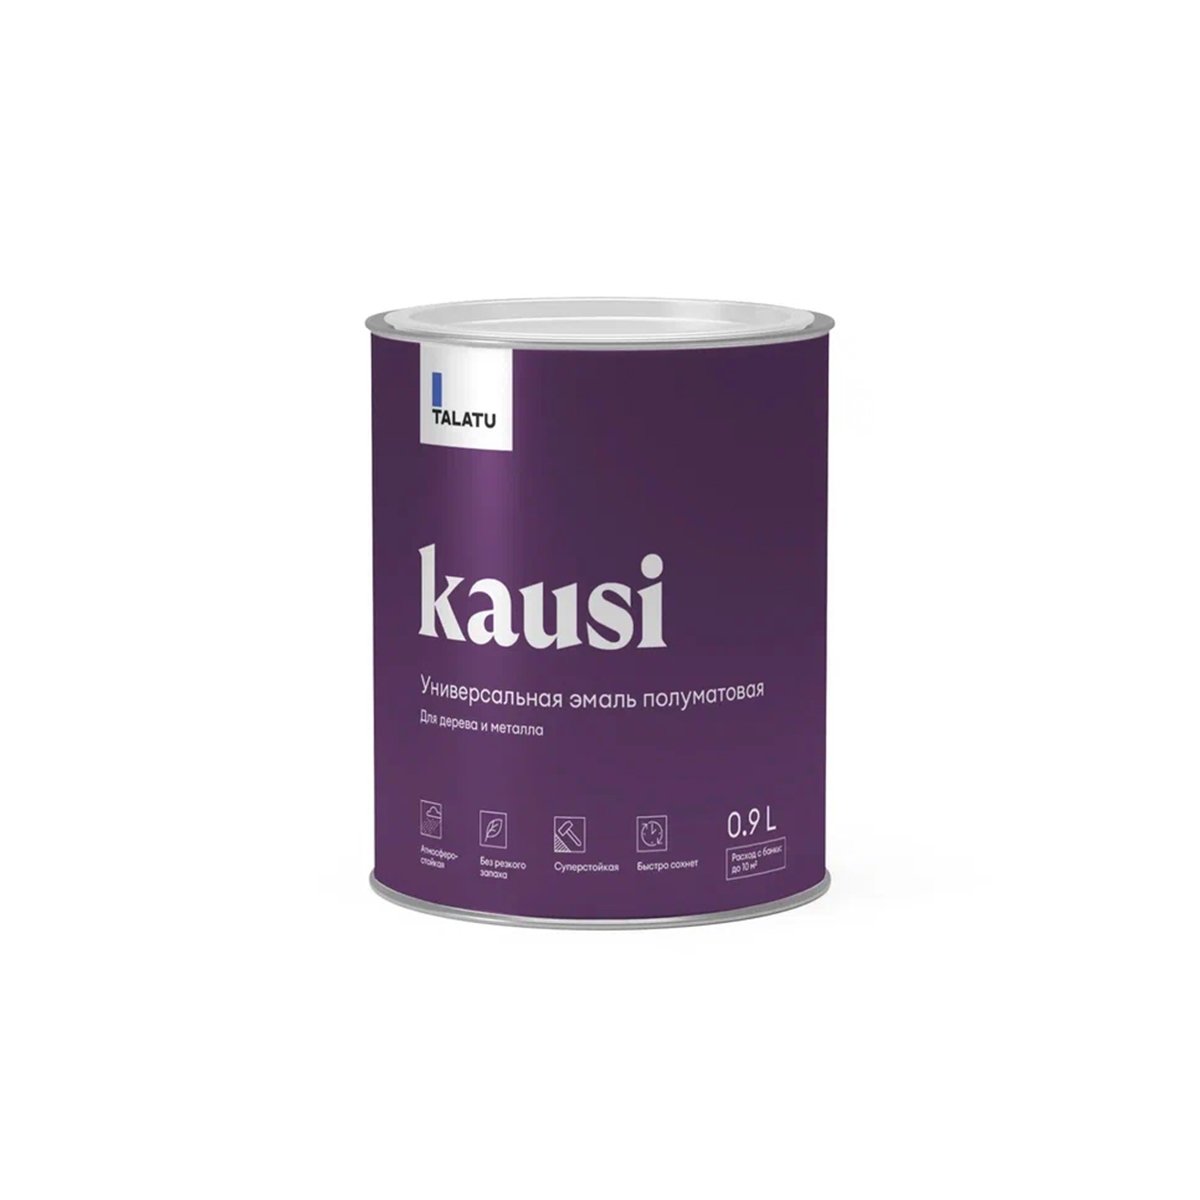 Эмаль универсальная Talatu Kausi, алкидная, полуматовая, база C, бесцветная, 0,9 л